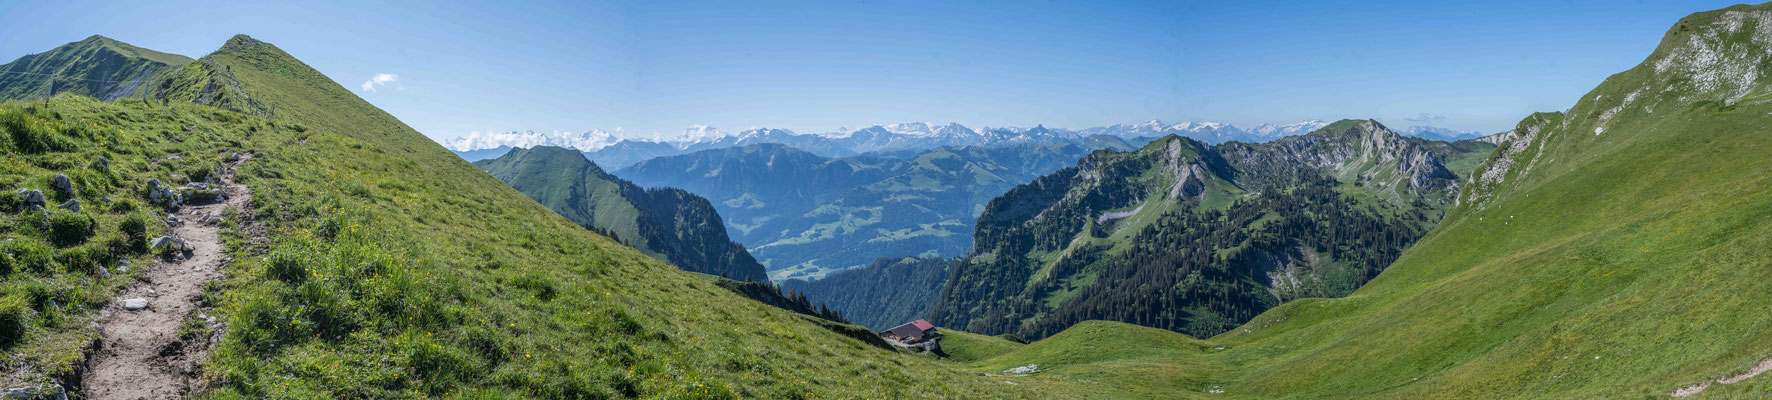 Aussicht vom Morgetepass in die Berner Alpen